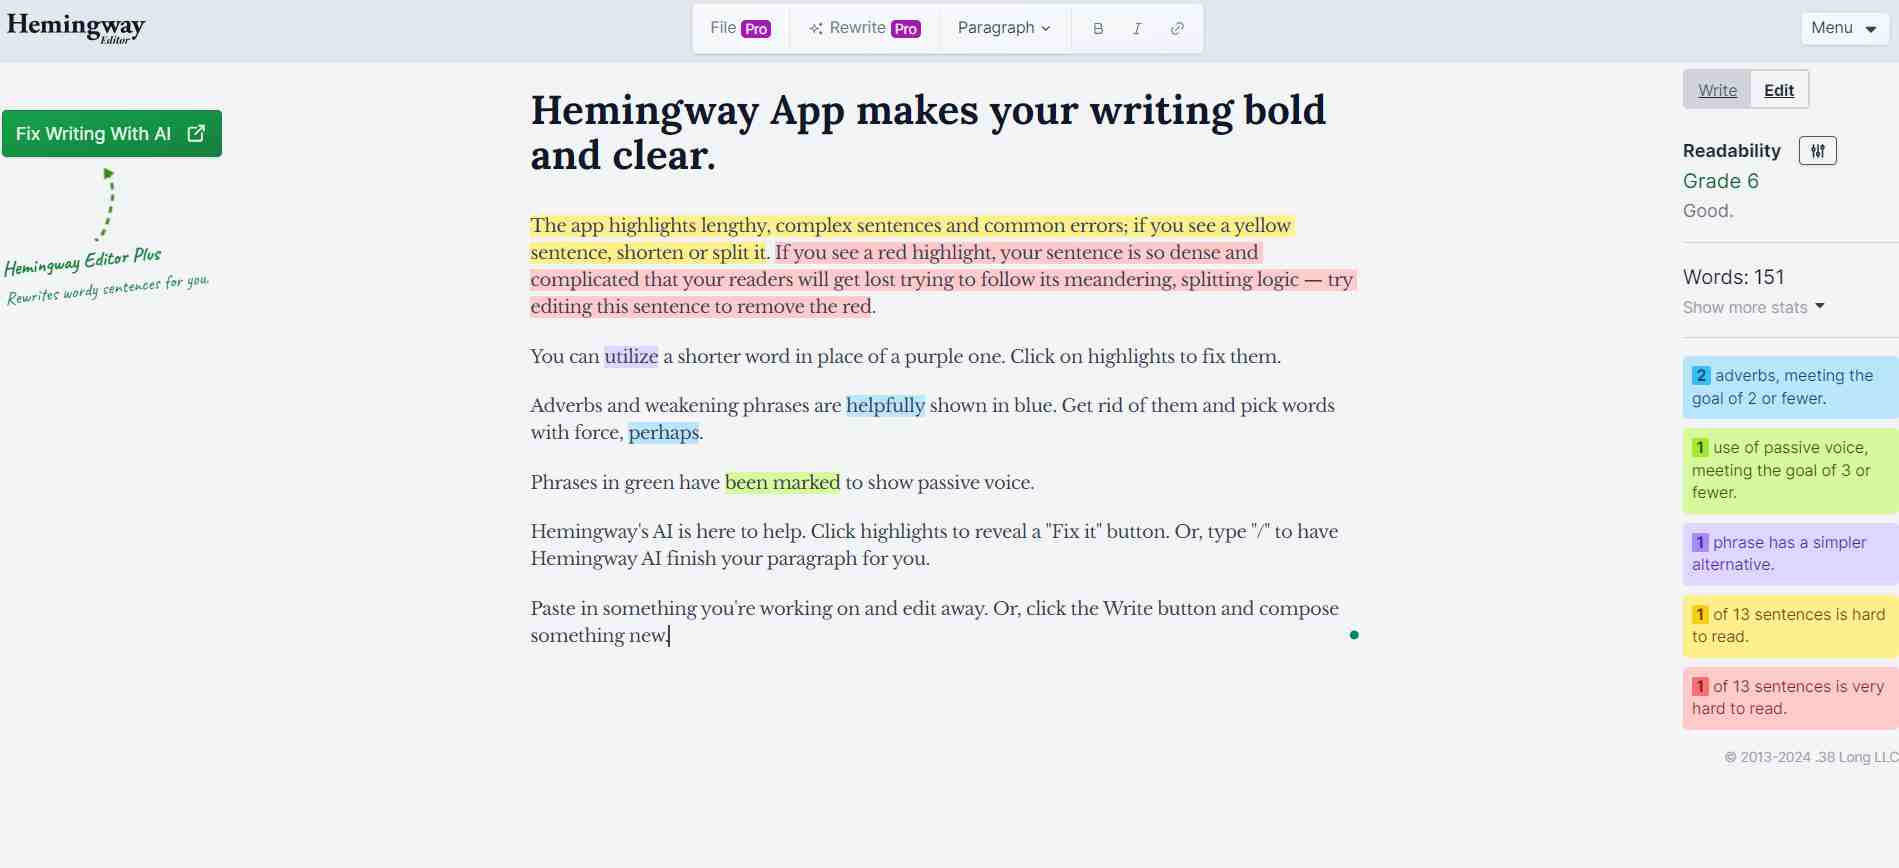 Hemingway-Parody-Writing-Editor